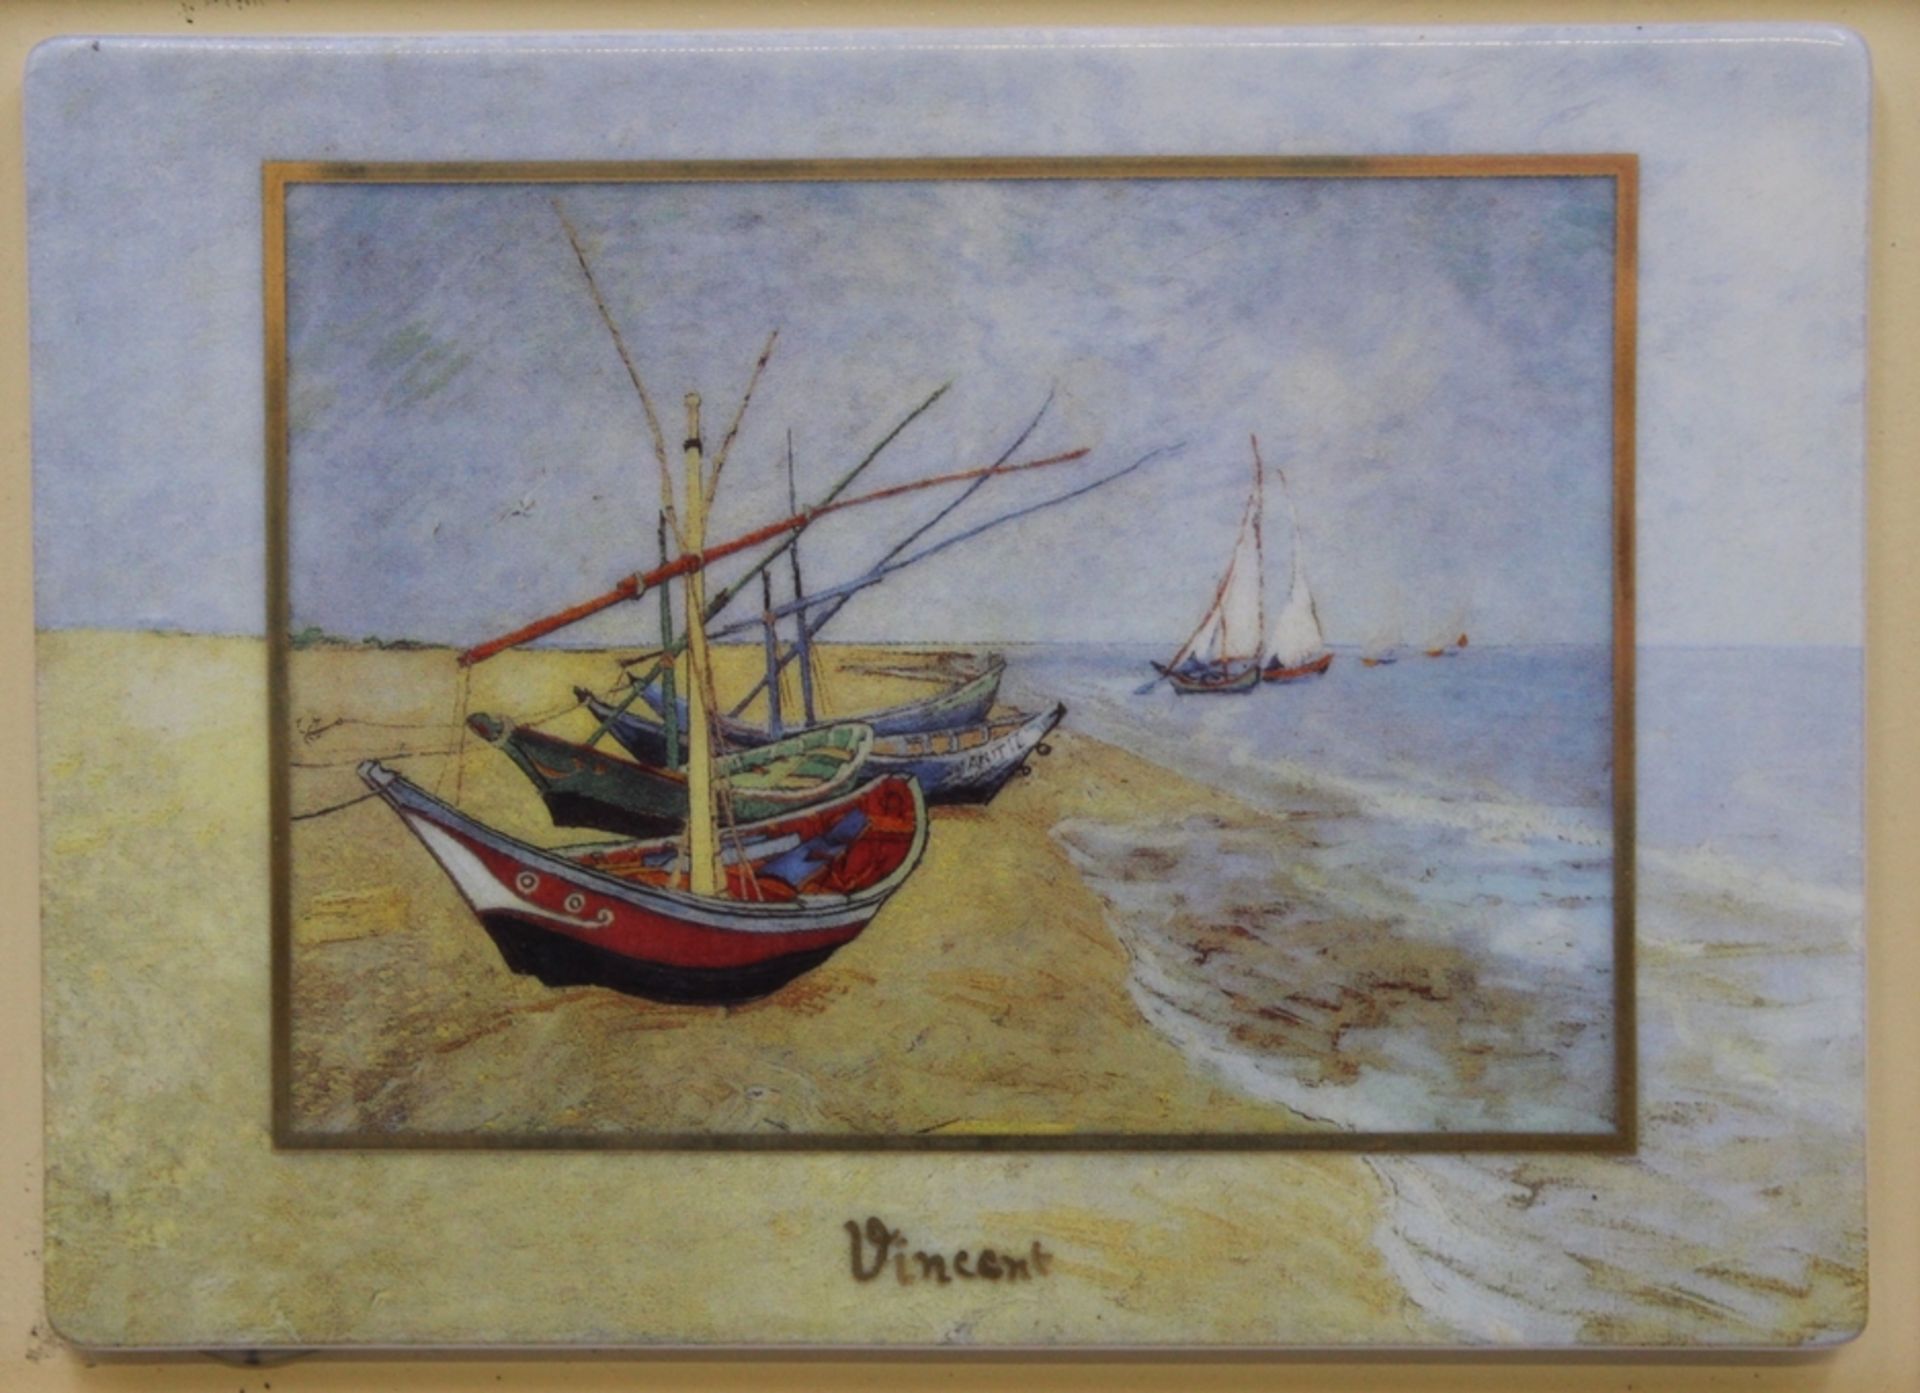 Bildplatte, Goebel, Artis-Orbis, Goebel, Vincent, gerahmt, RG 17,5 x 22cm.